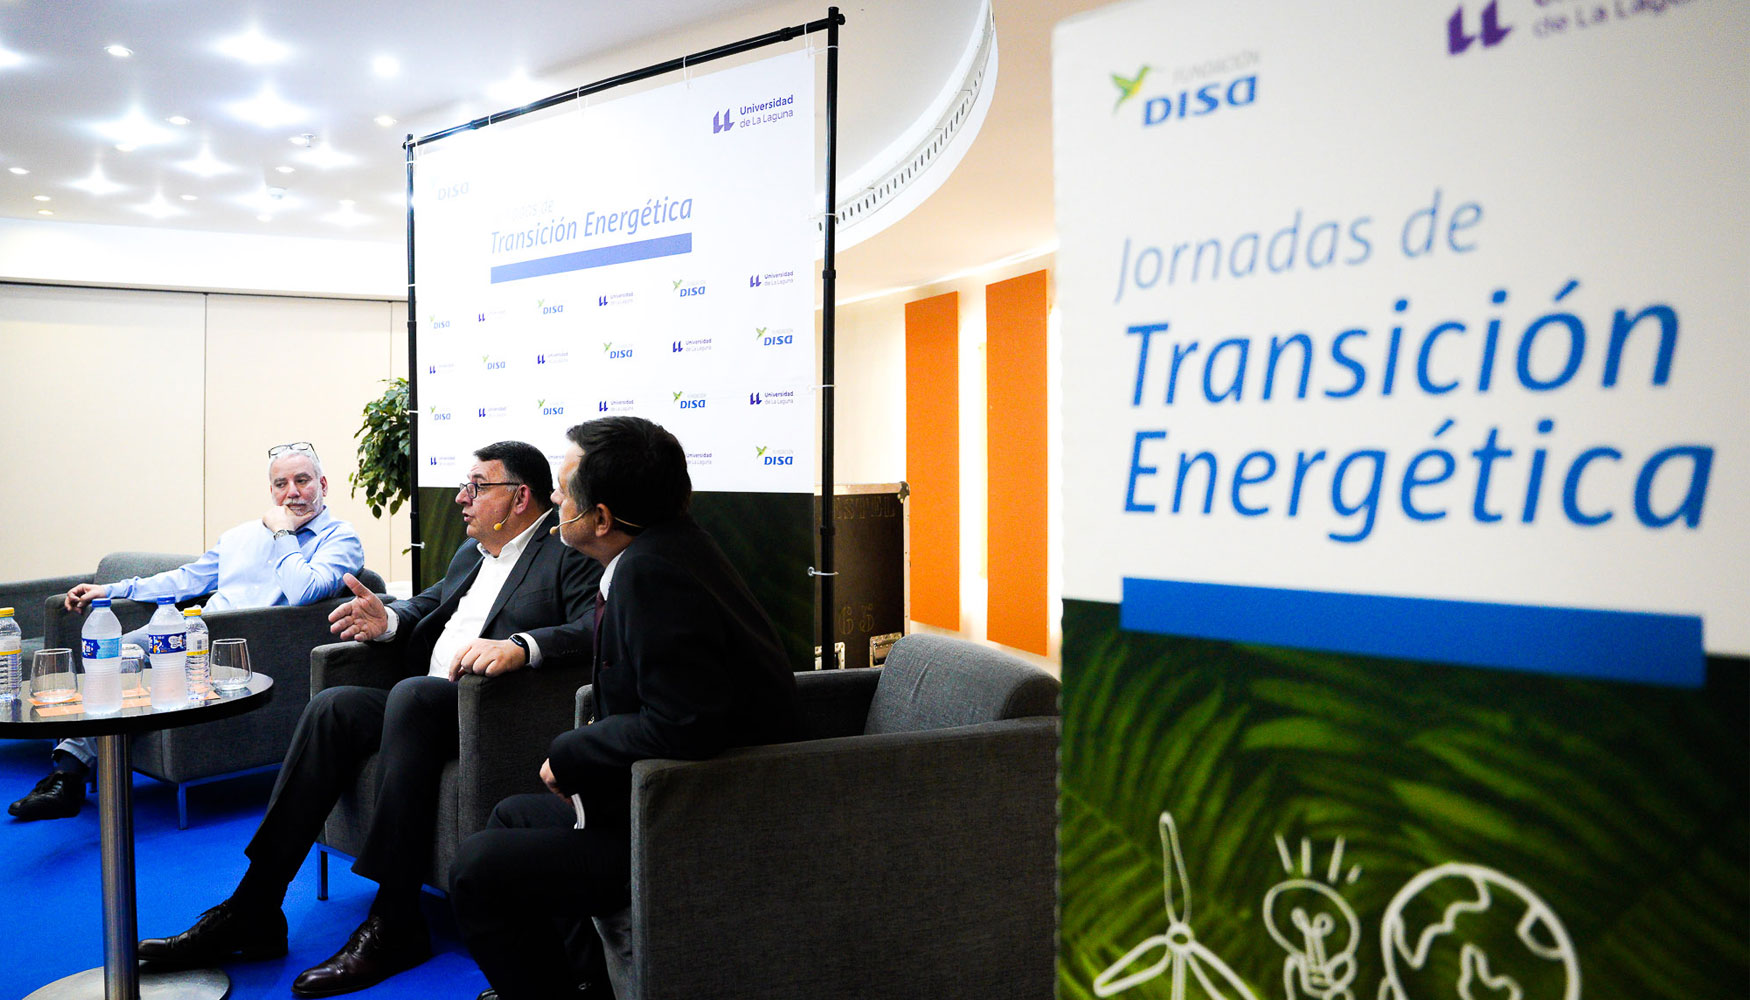 Las jornadas sobre Transicin Energtica organizadas por la Fundacin Disa sern clausuradas el 9 de junio en la Facultad de Economa...